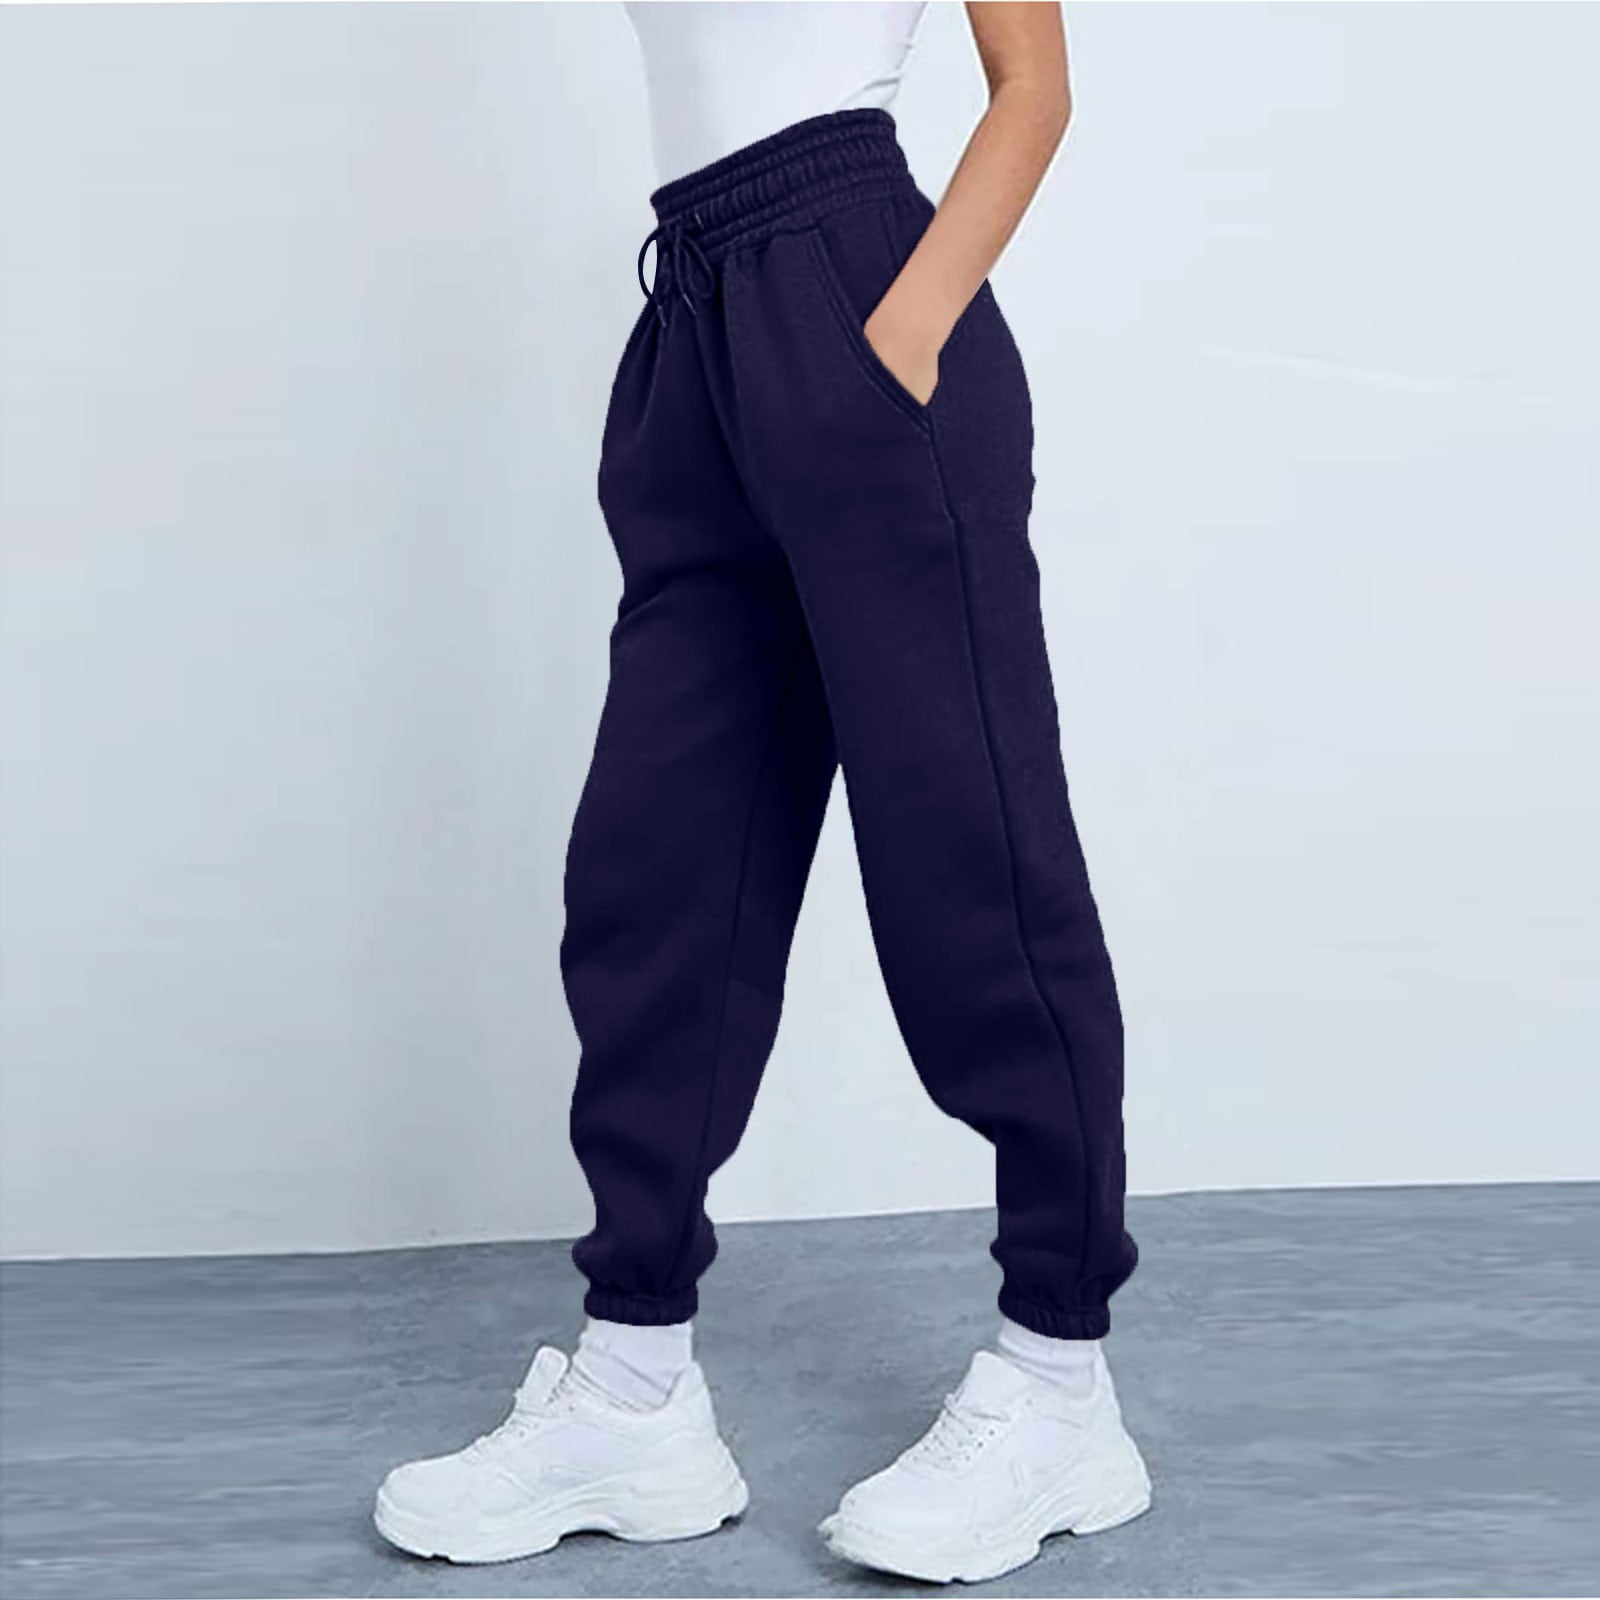 ELFINDEA Lounge Pants Women Fashion Sport Solid Color